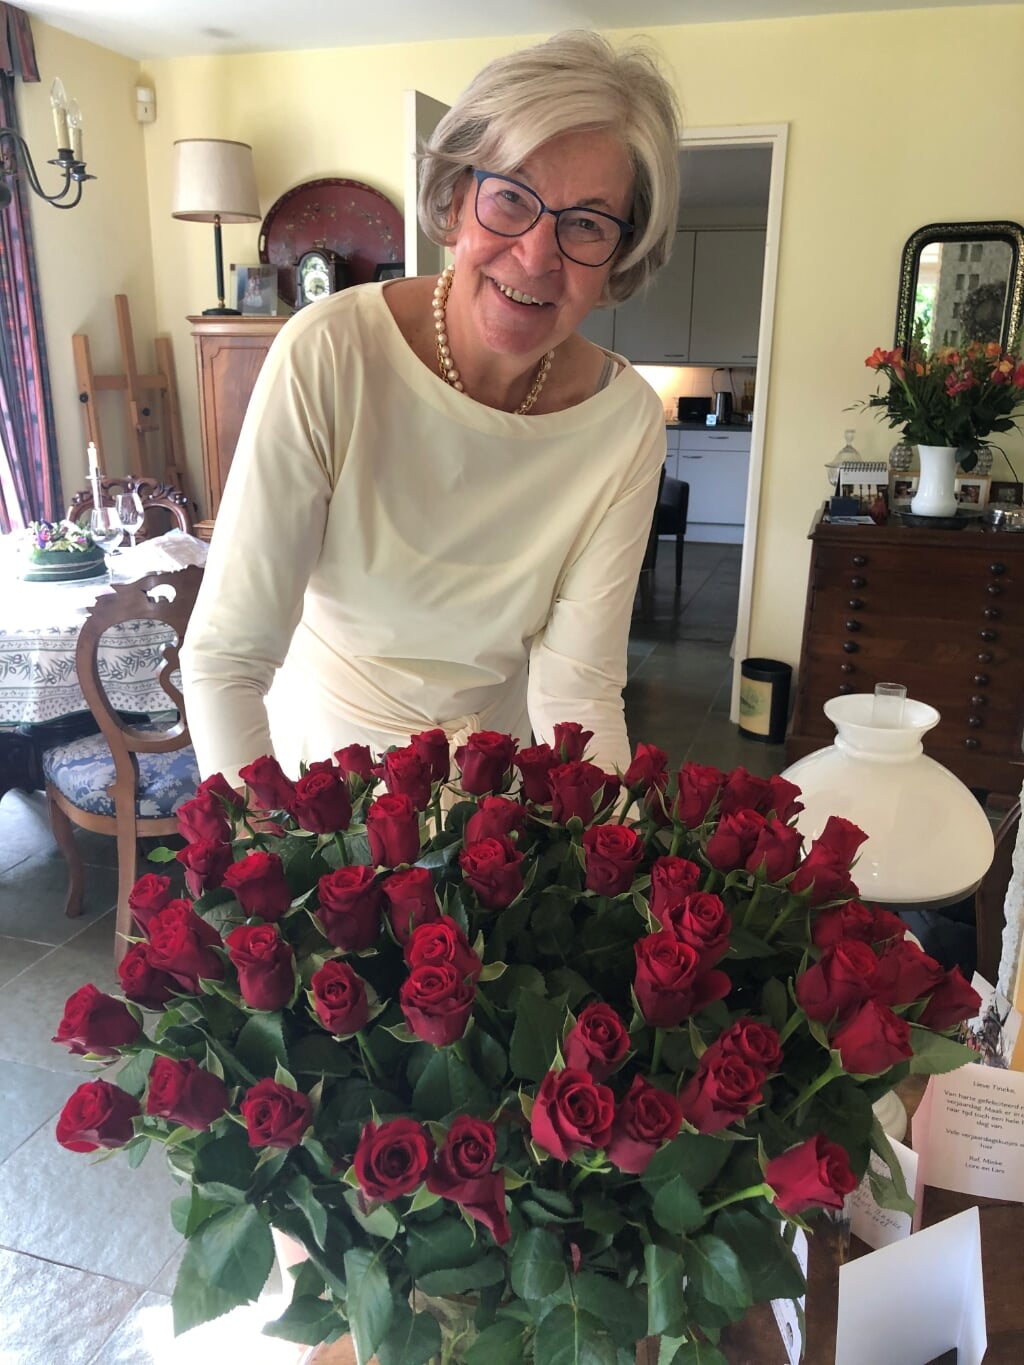 Tineke Roorda, op haar 76ste verjaardag door haar man Sjoerd verblijd met 76 rozen. Eigen foto